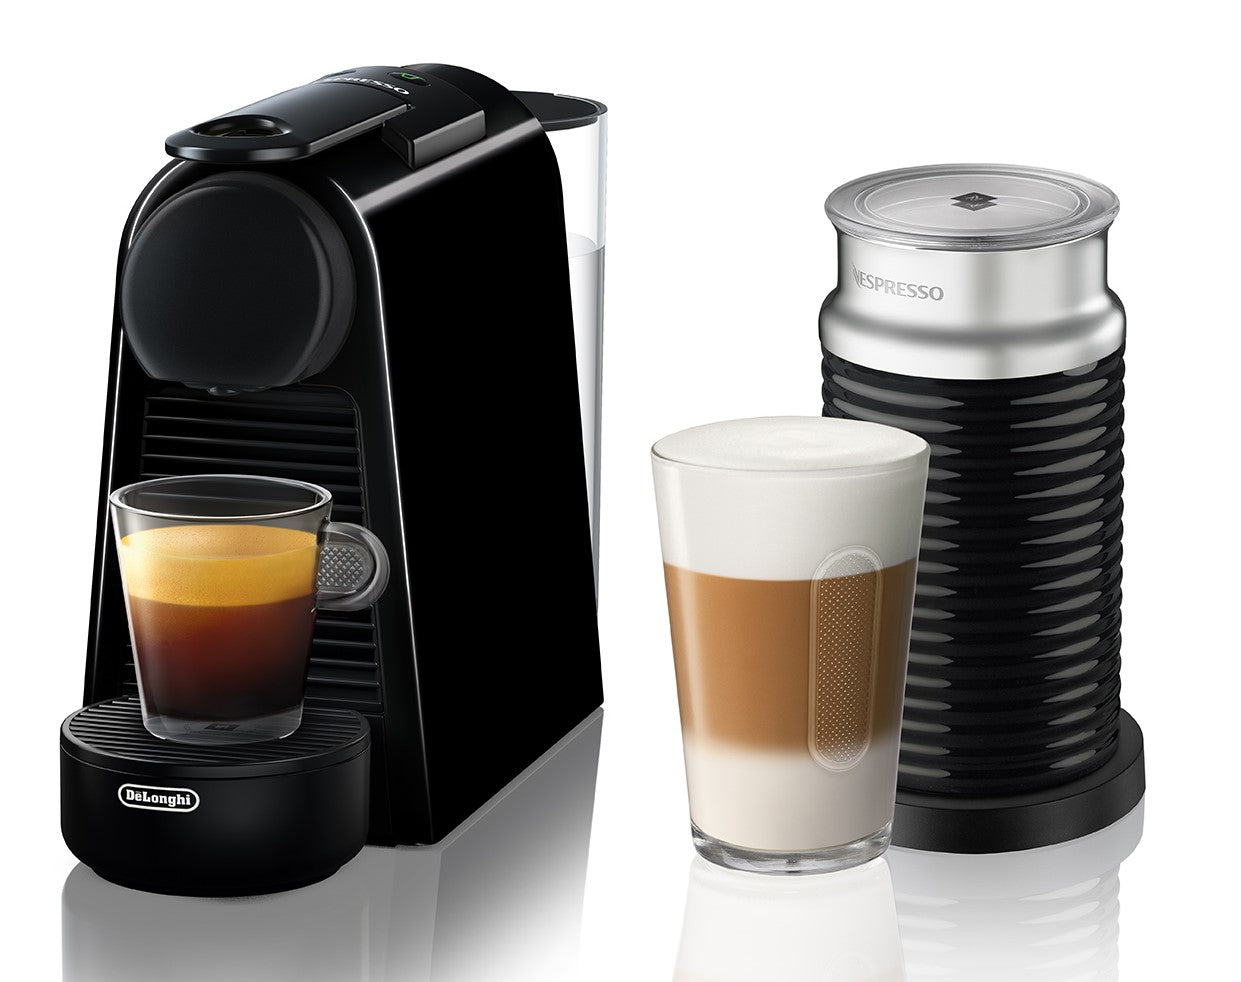 Nespresso Milk Froth Guide - Nespresso Aeroccino vs Steam Wand vs Single  Touch Hot Milk 